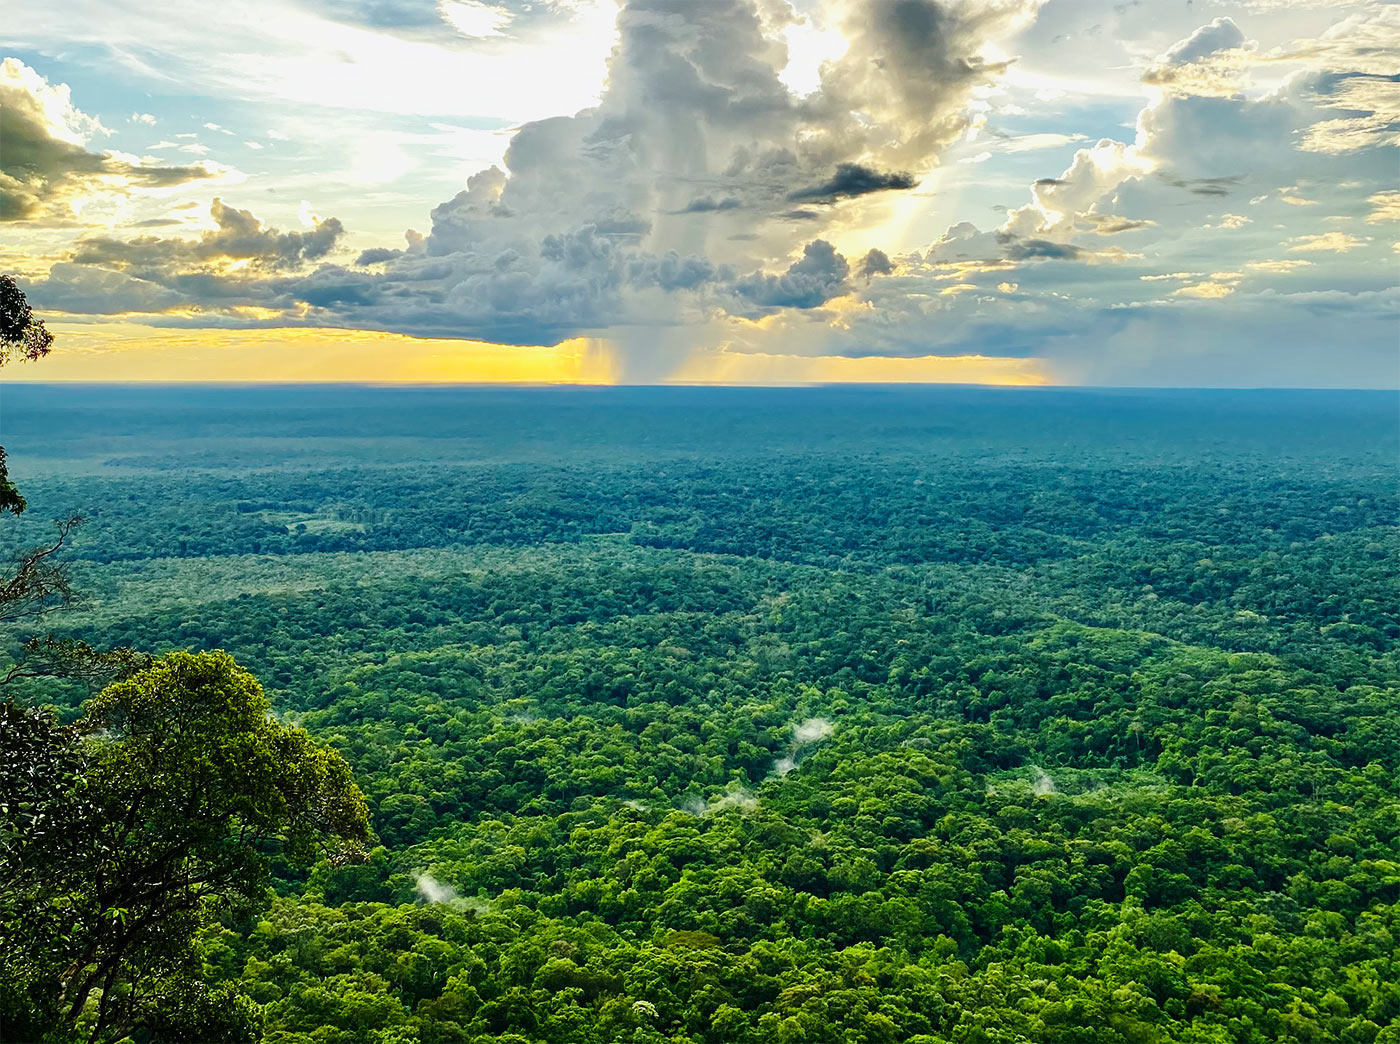 Impressive jungle landscape in Colombia